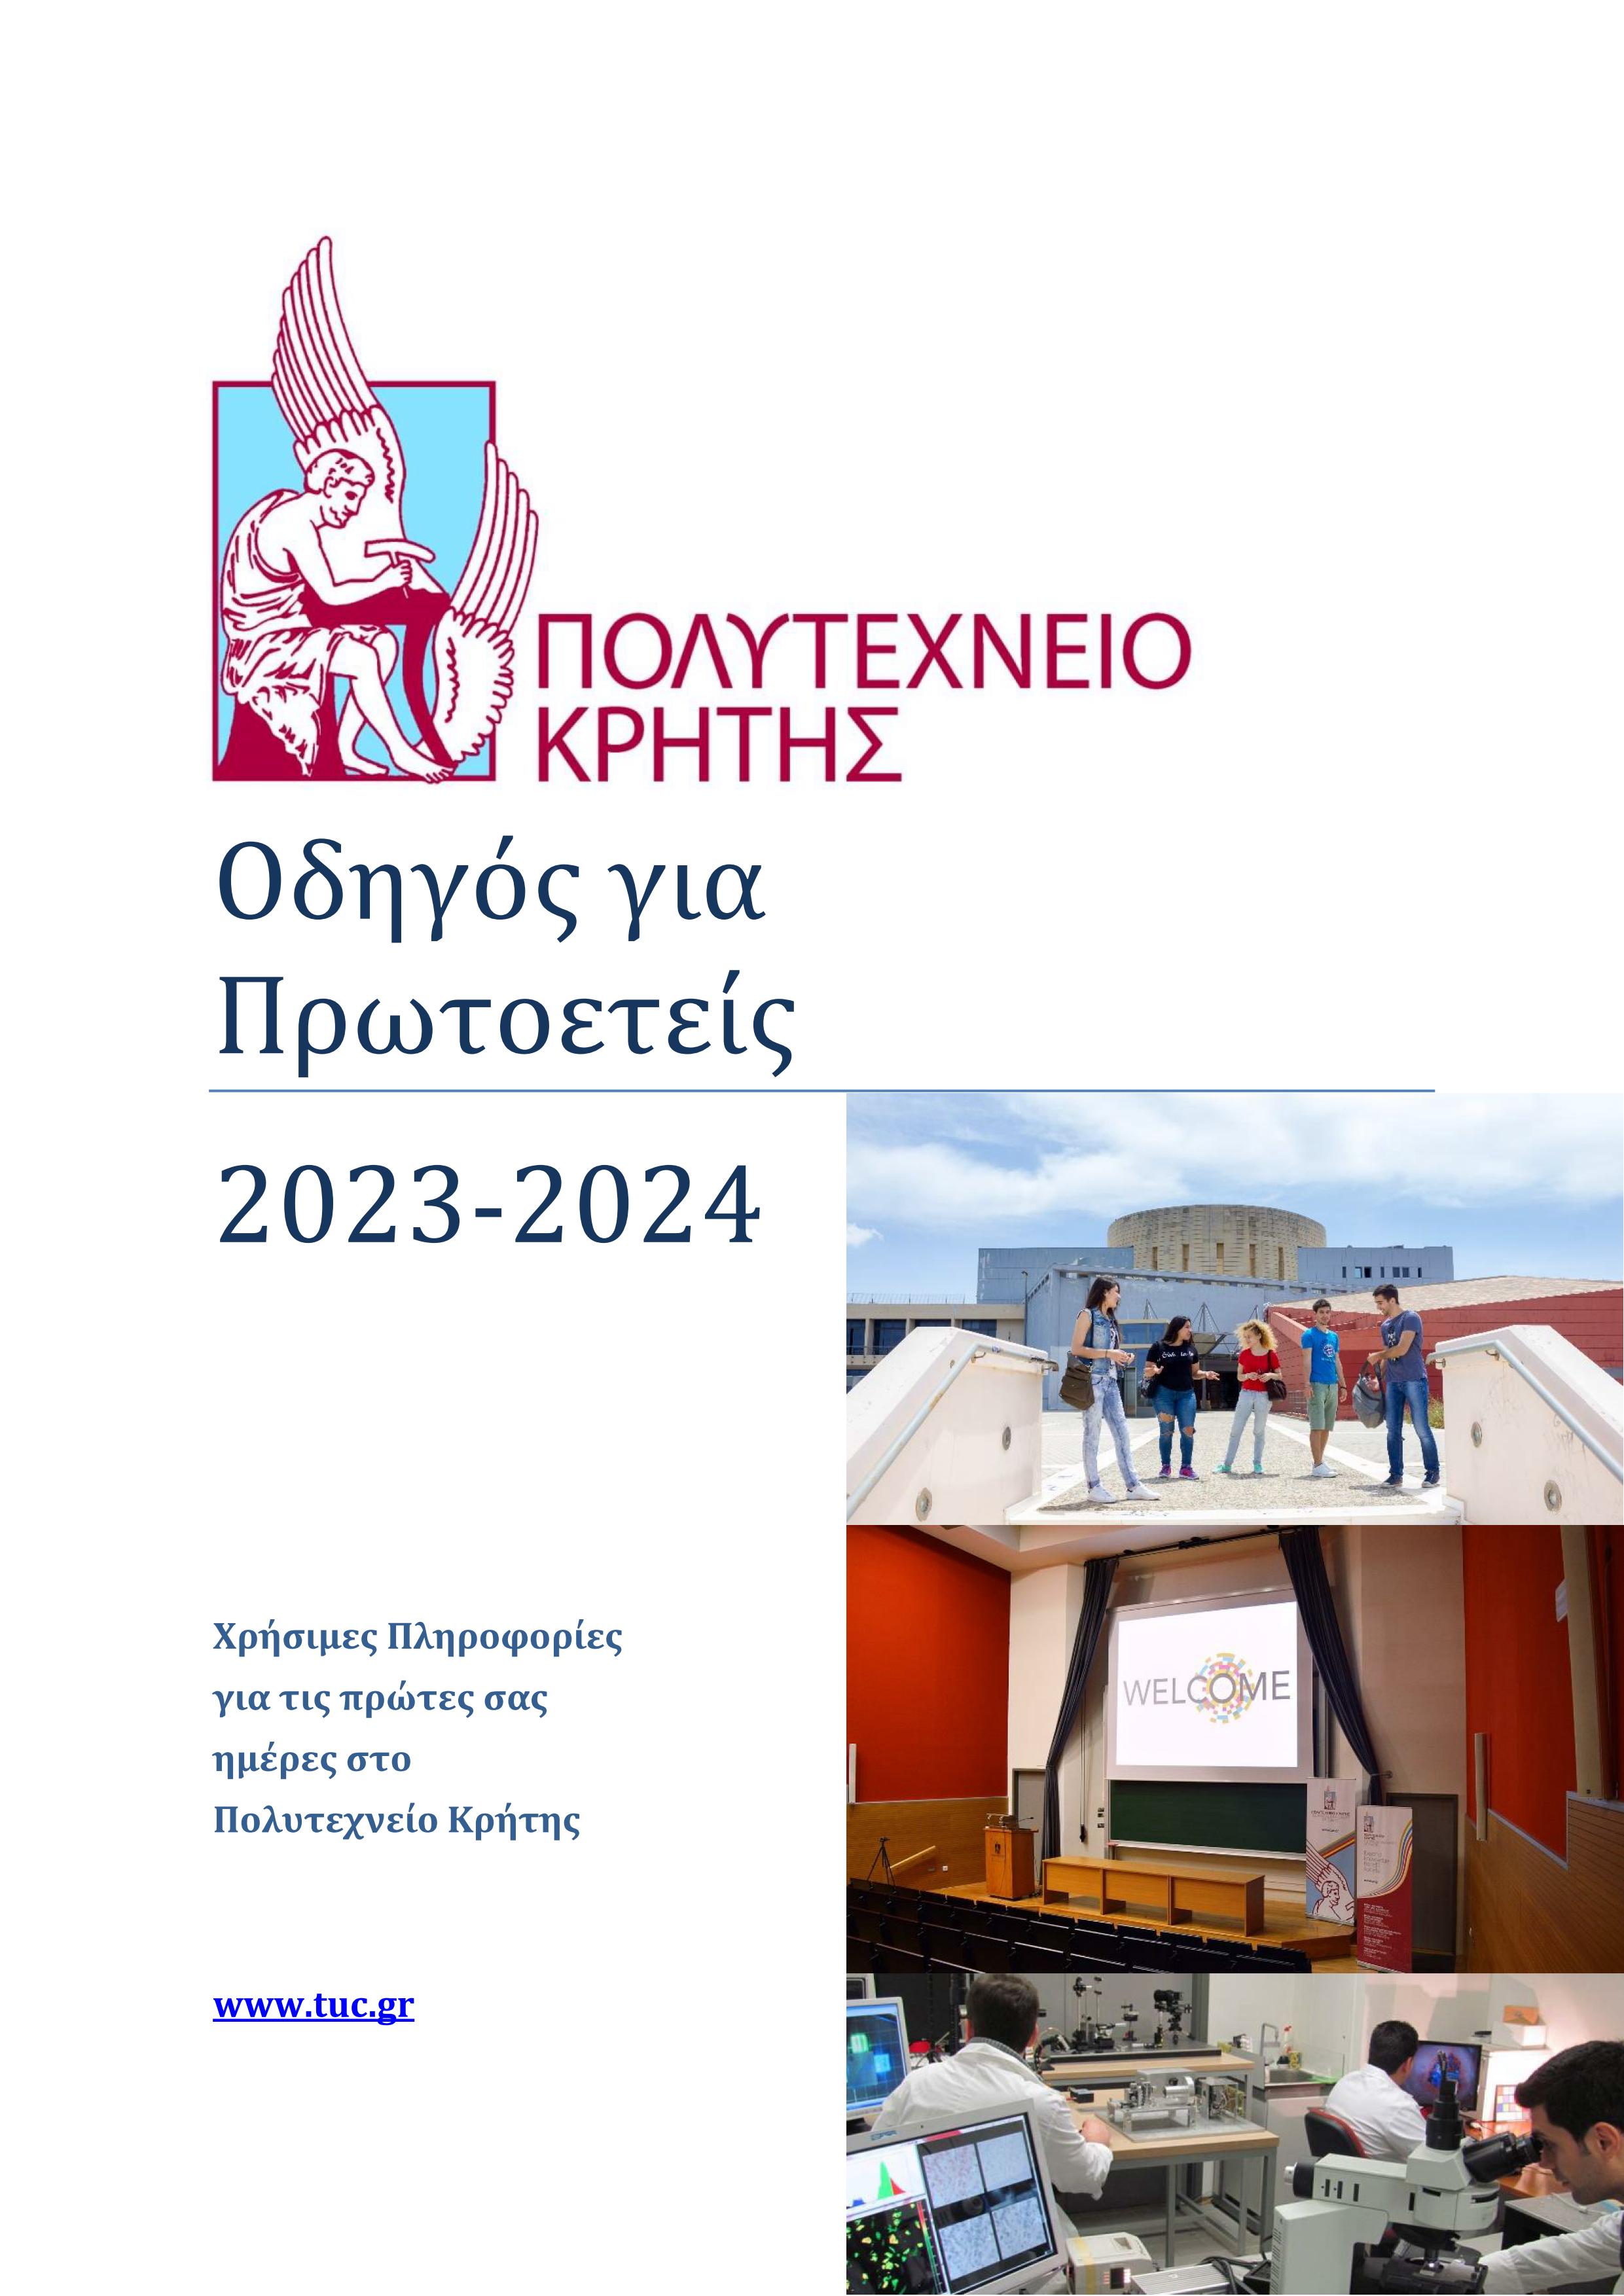 Οδηγός Πρωτοετών Φοιτητών Πολυτεχνείου Κρήτης 2023-2024